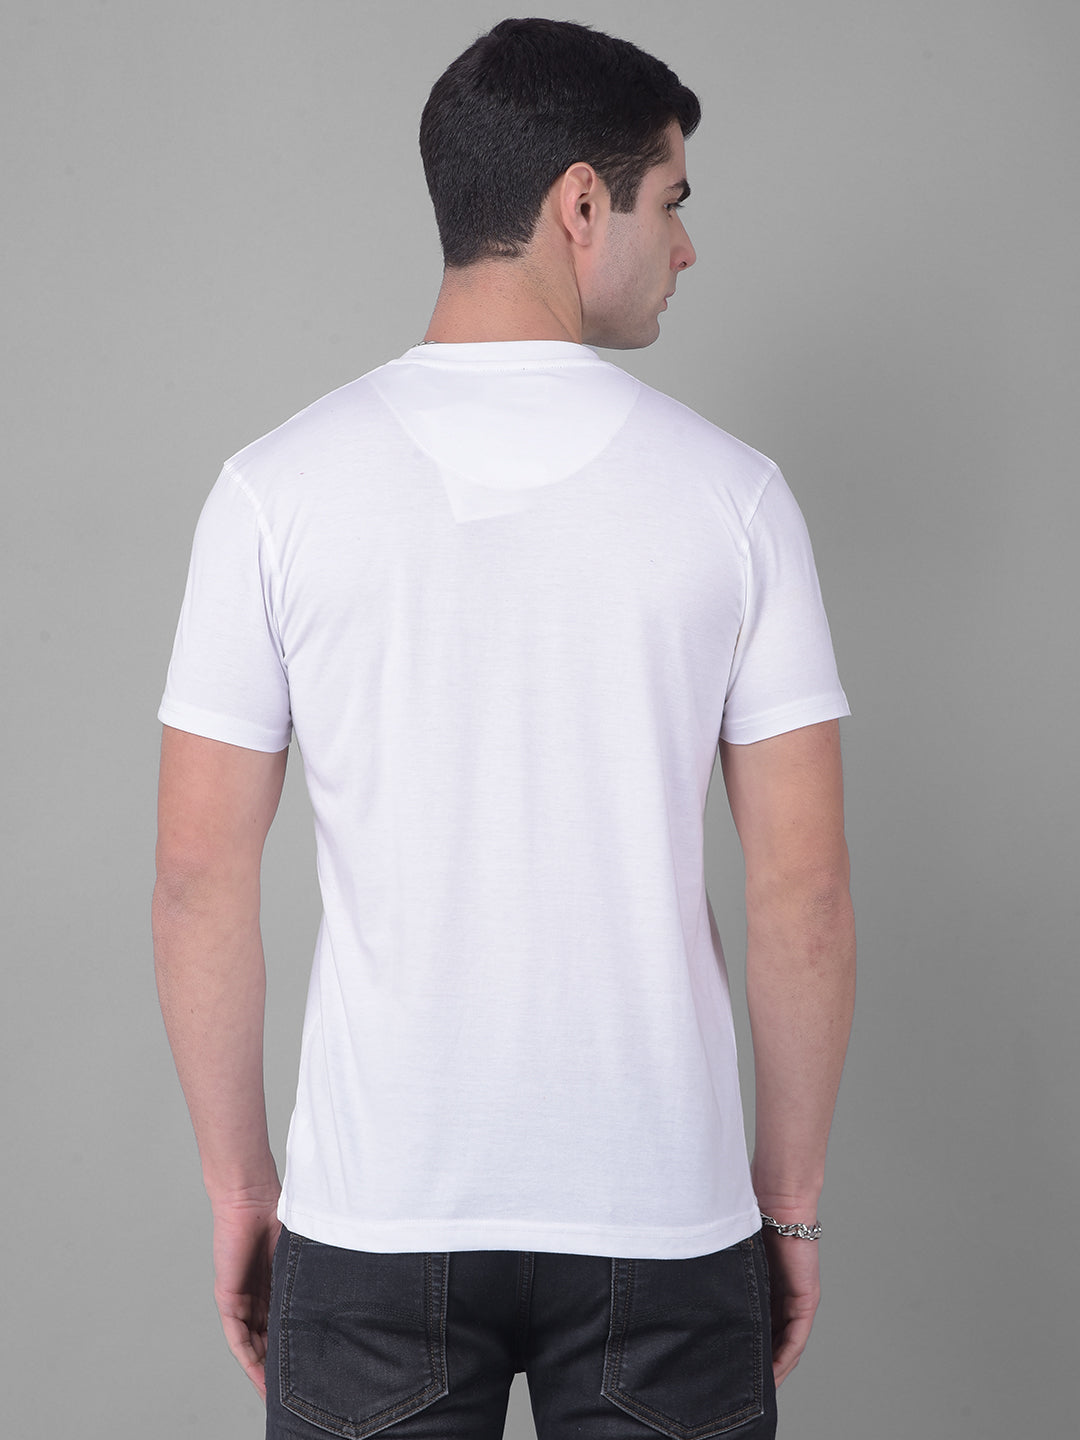 cobb imaginary white printed round neck t-shirt